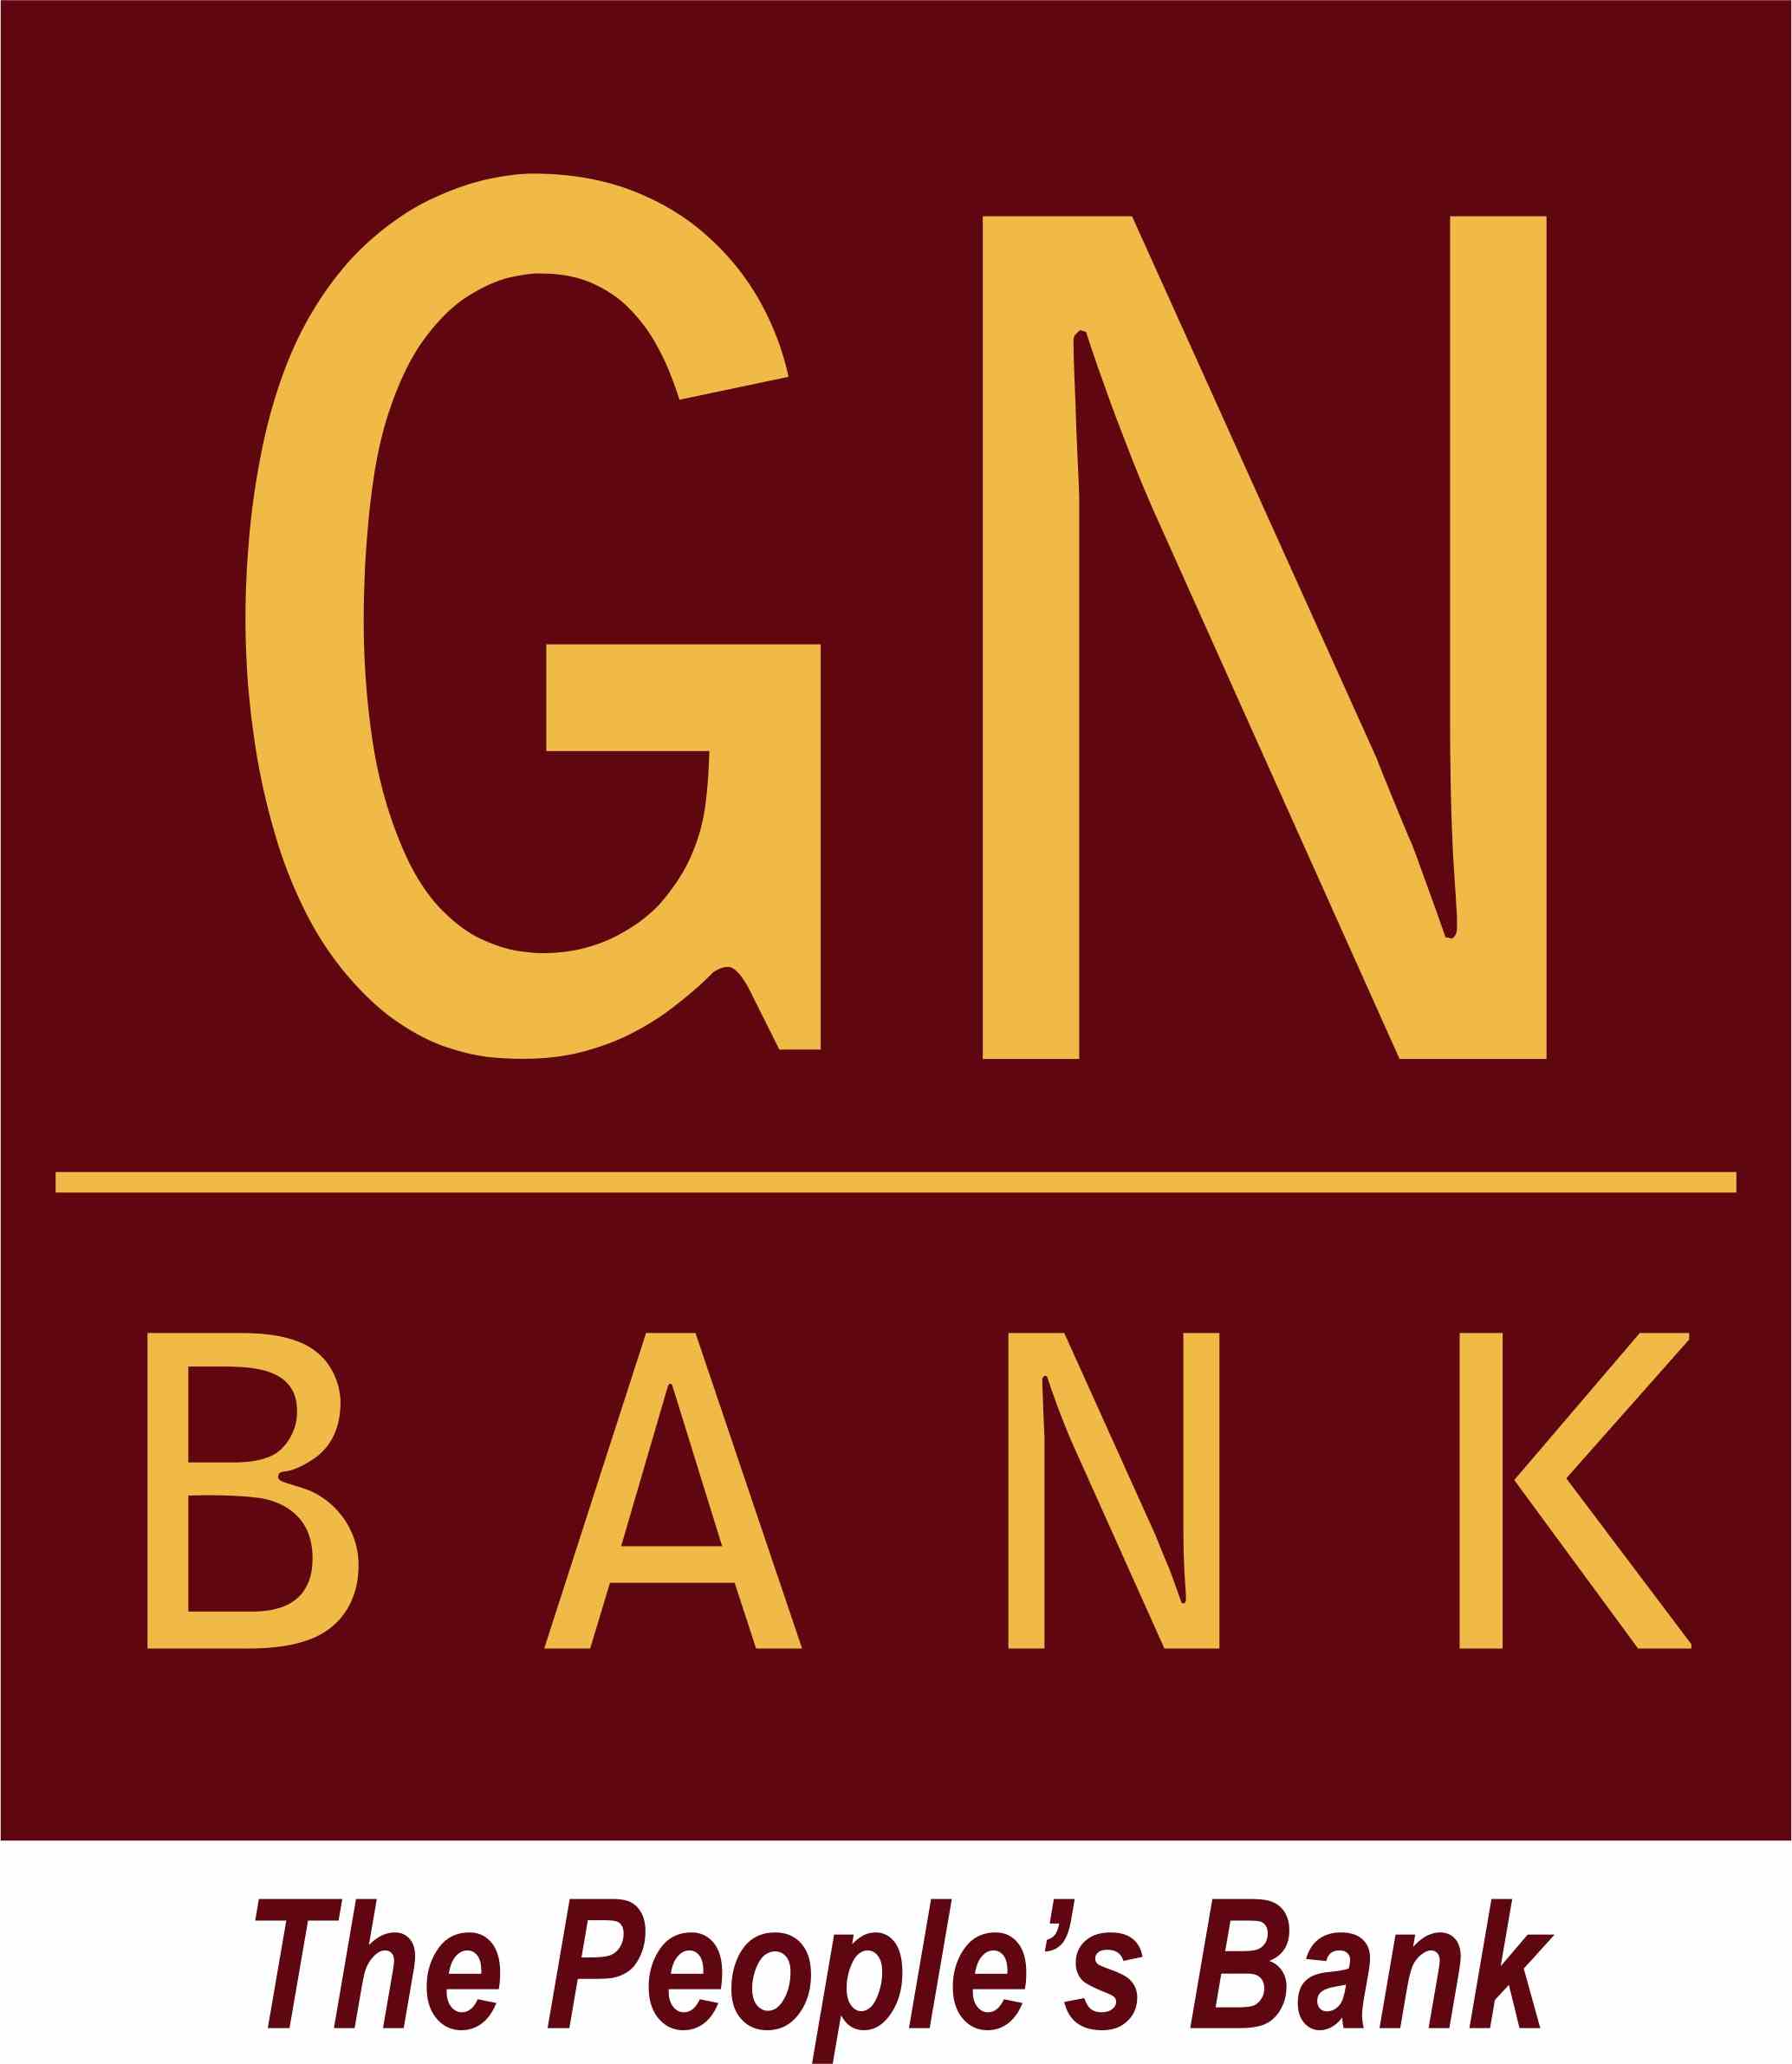 Orange and Red Bank Logo - File:GN Bank logo.jpg